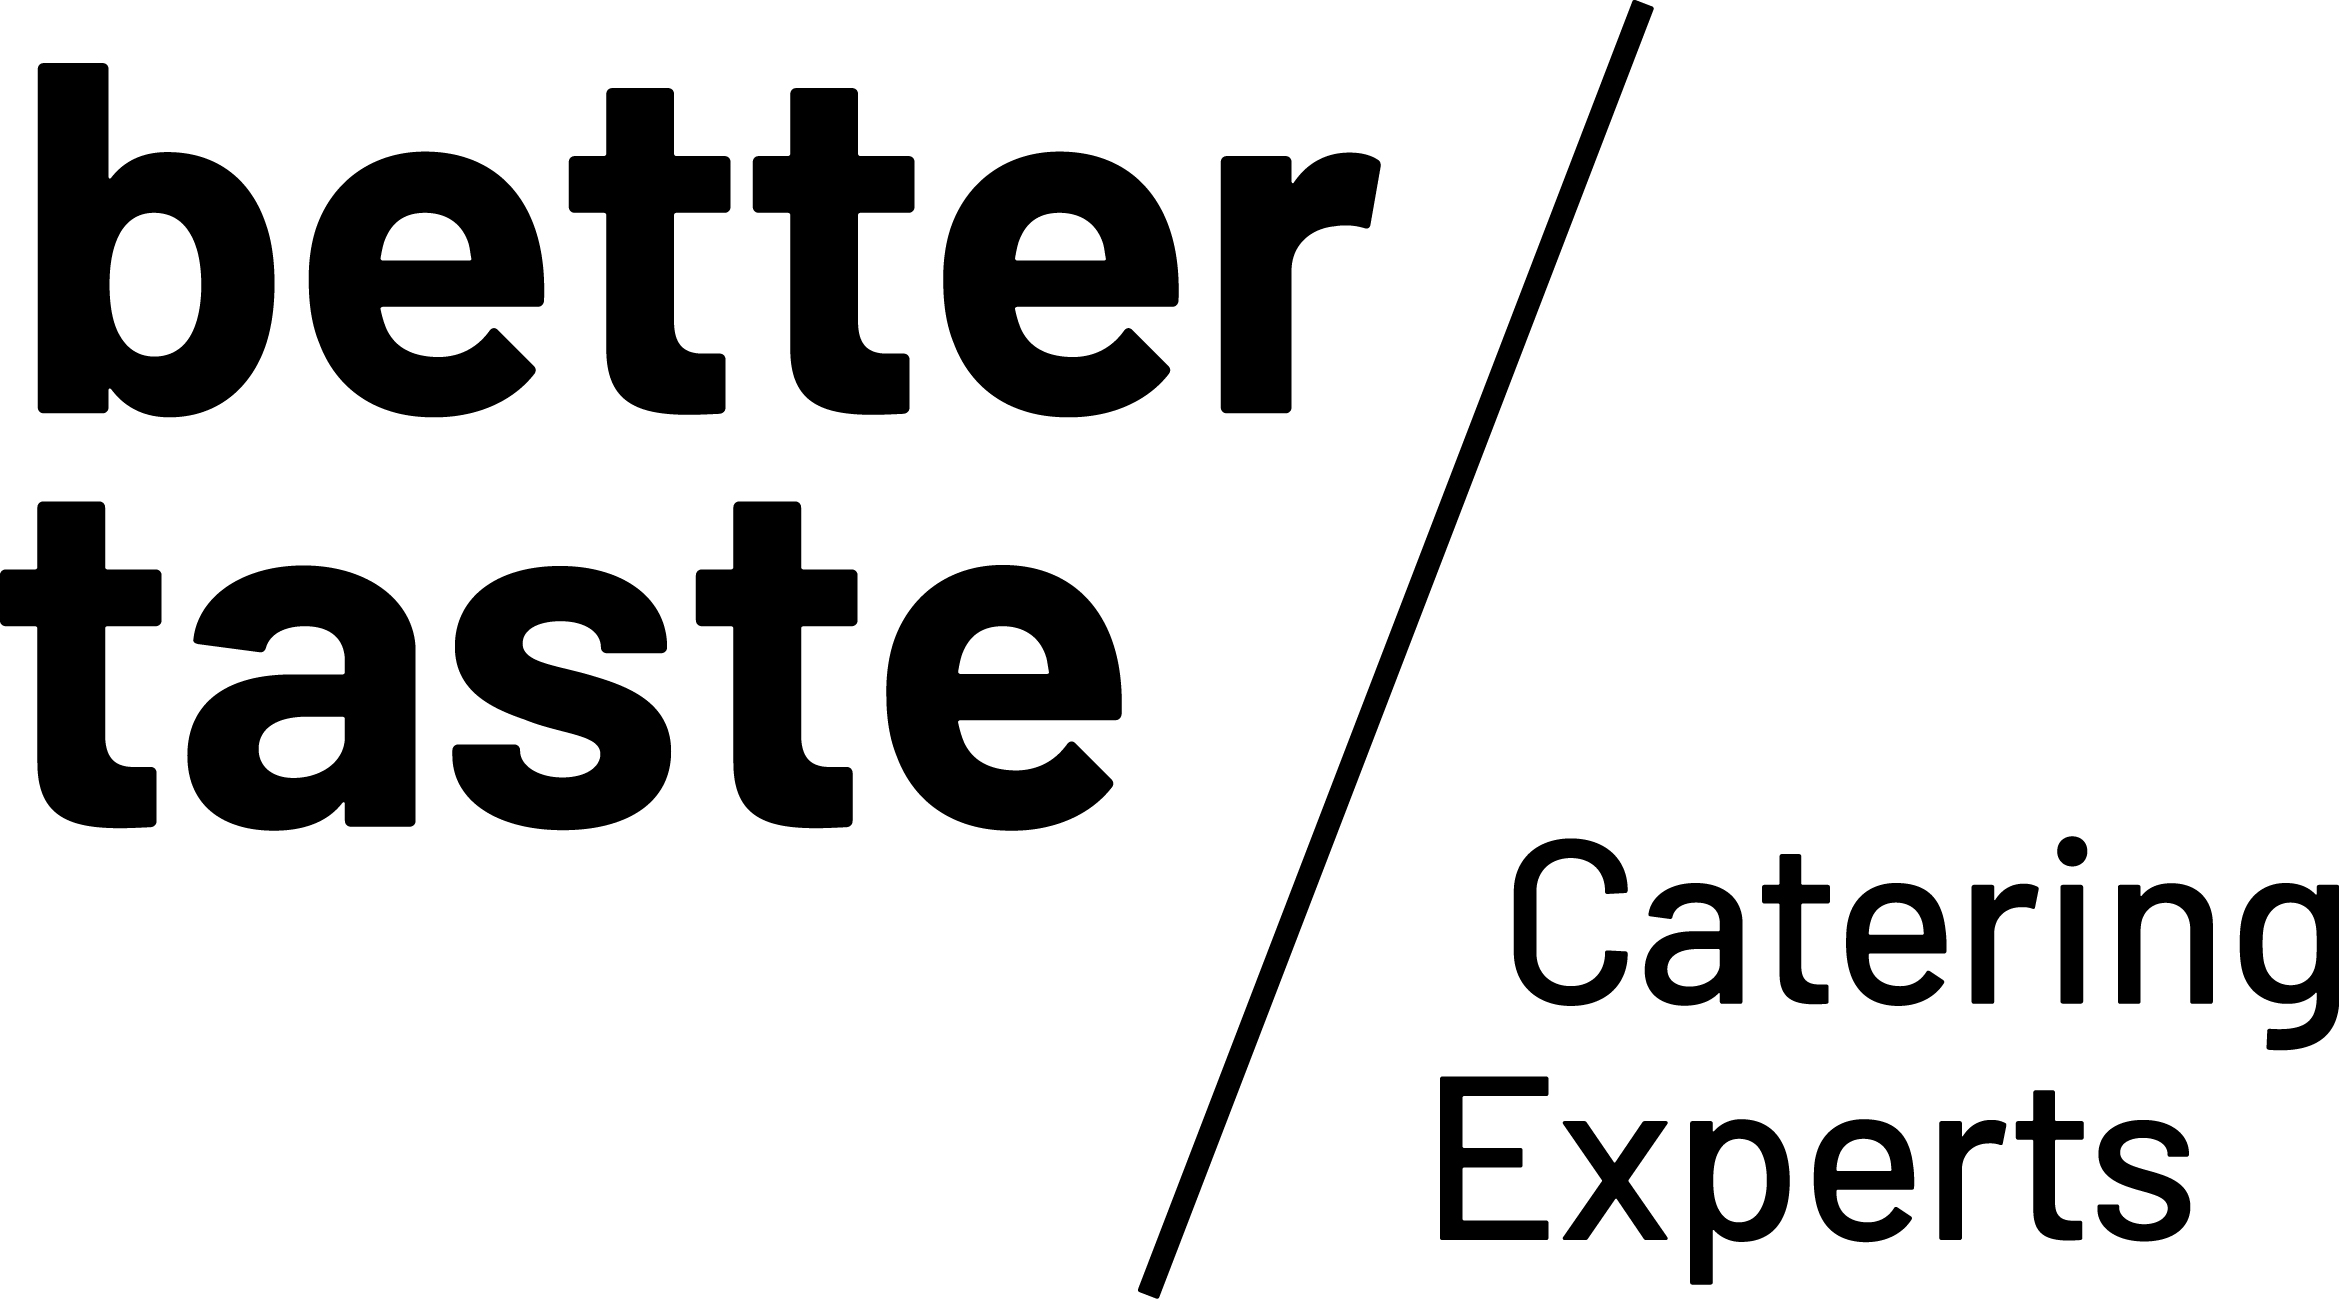 Better Taste GmbH